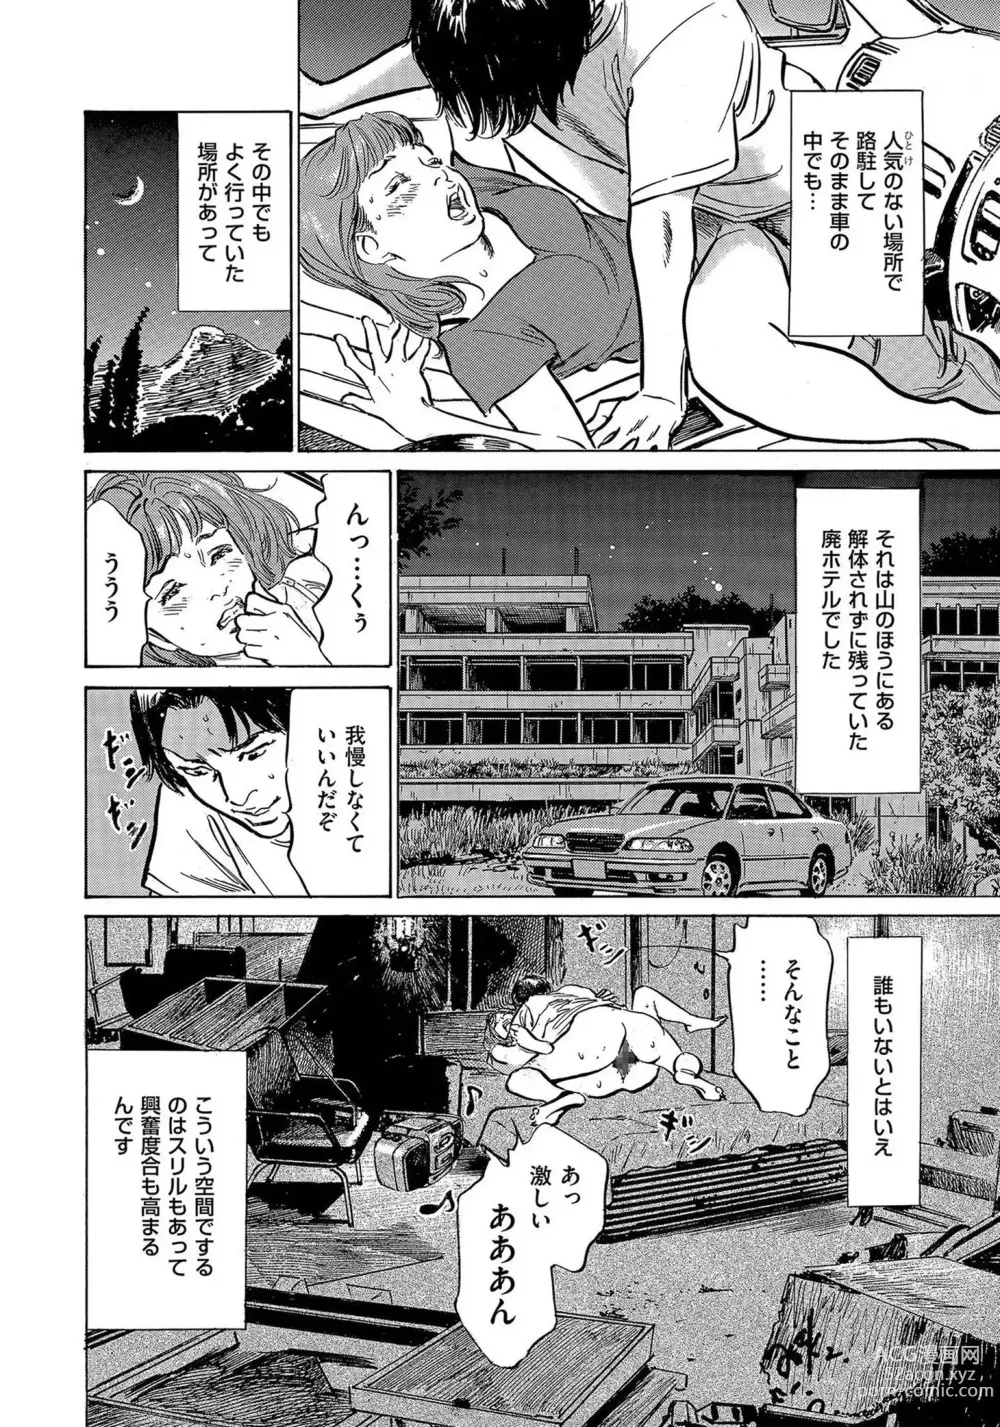 Page 21 of manga Saikou ni Toroketa Honki de Honto no Hanashi 16 episodes